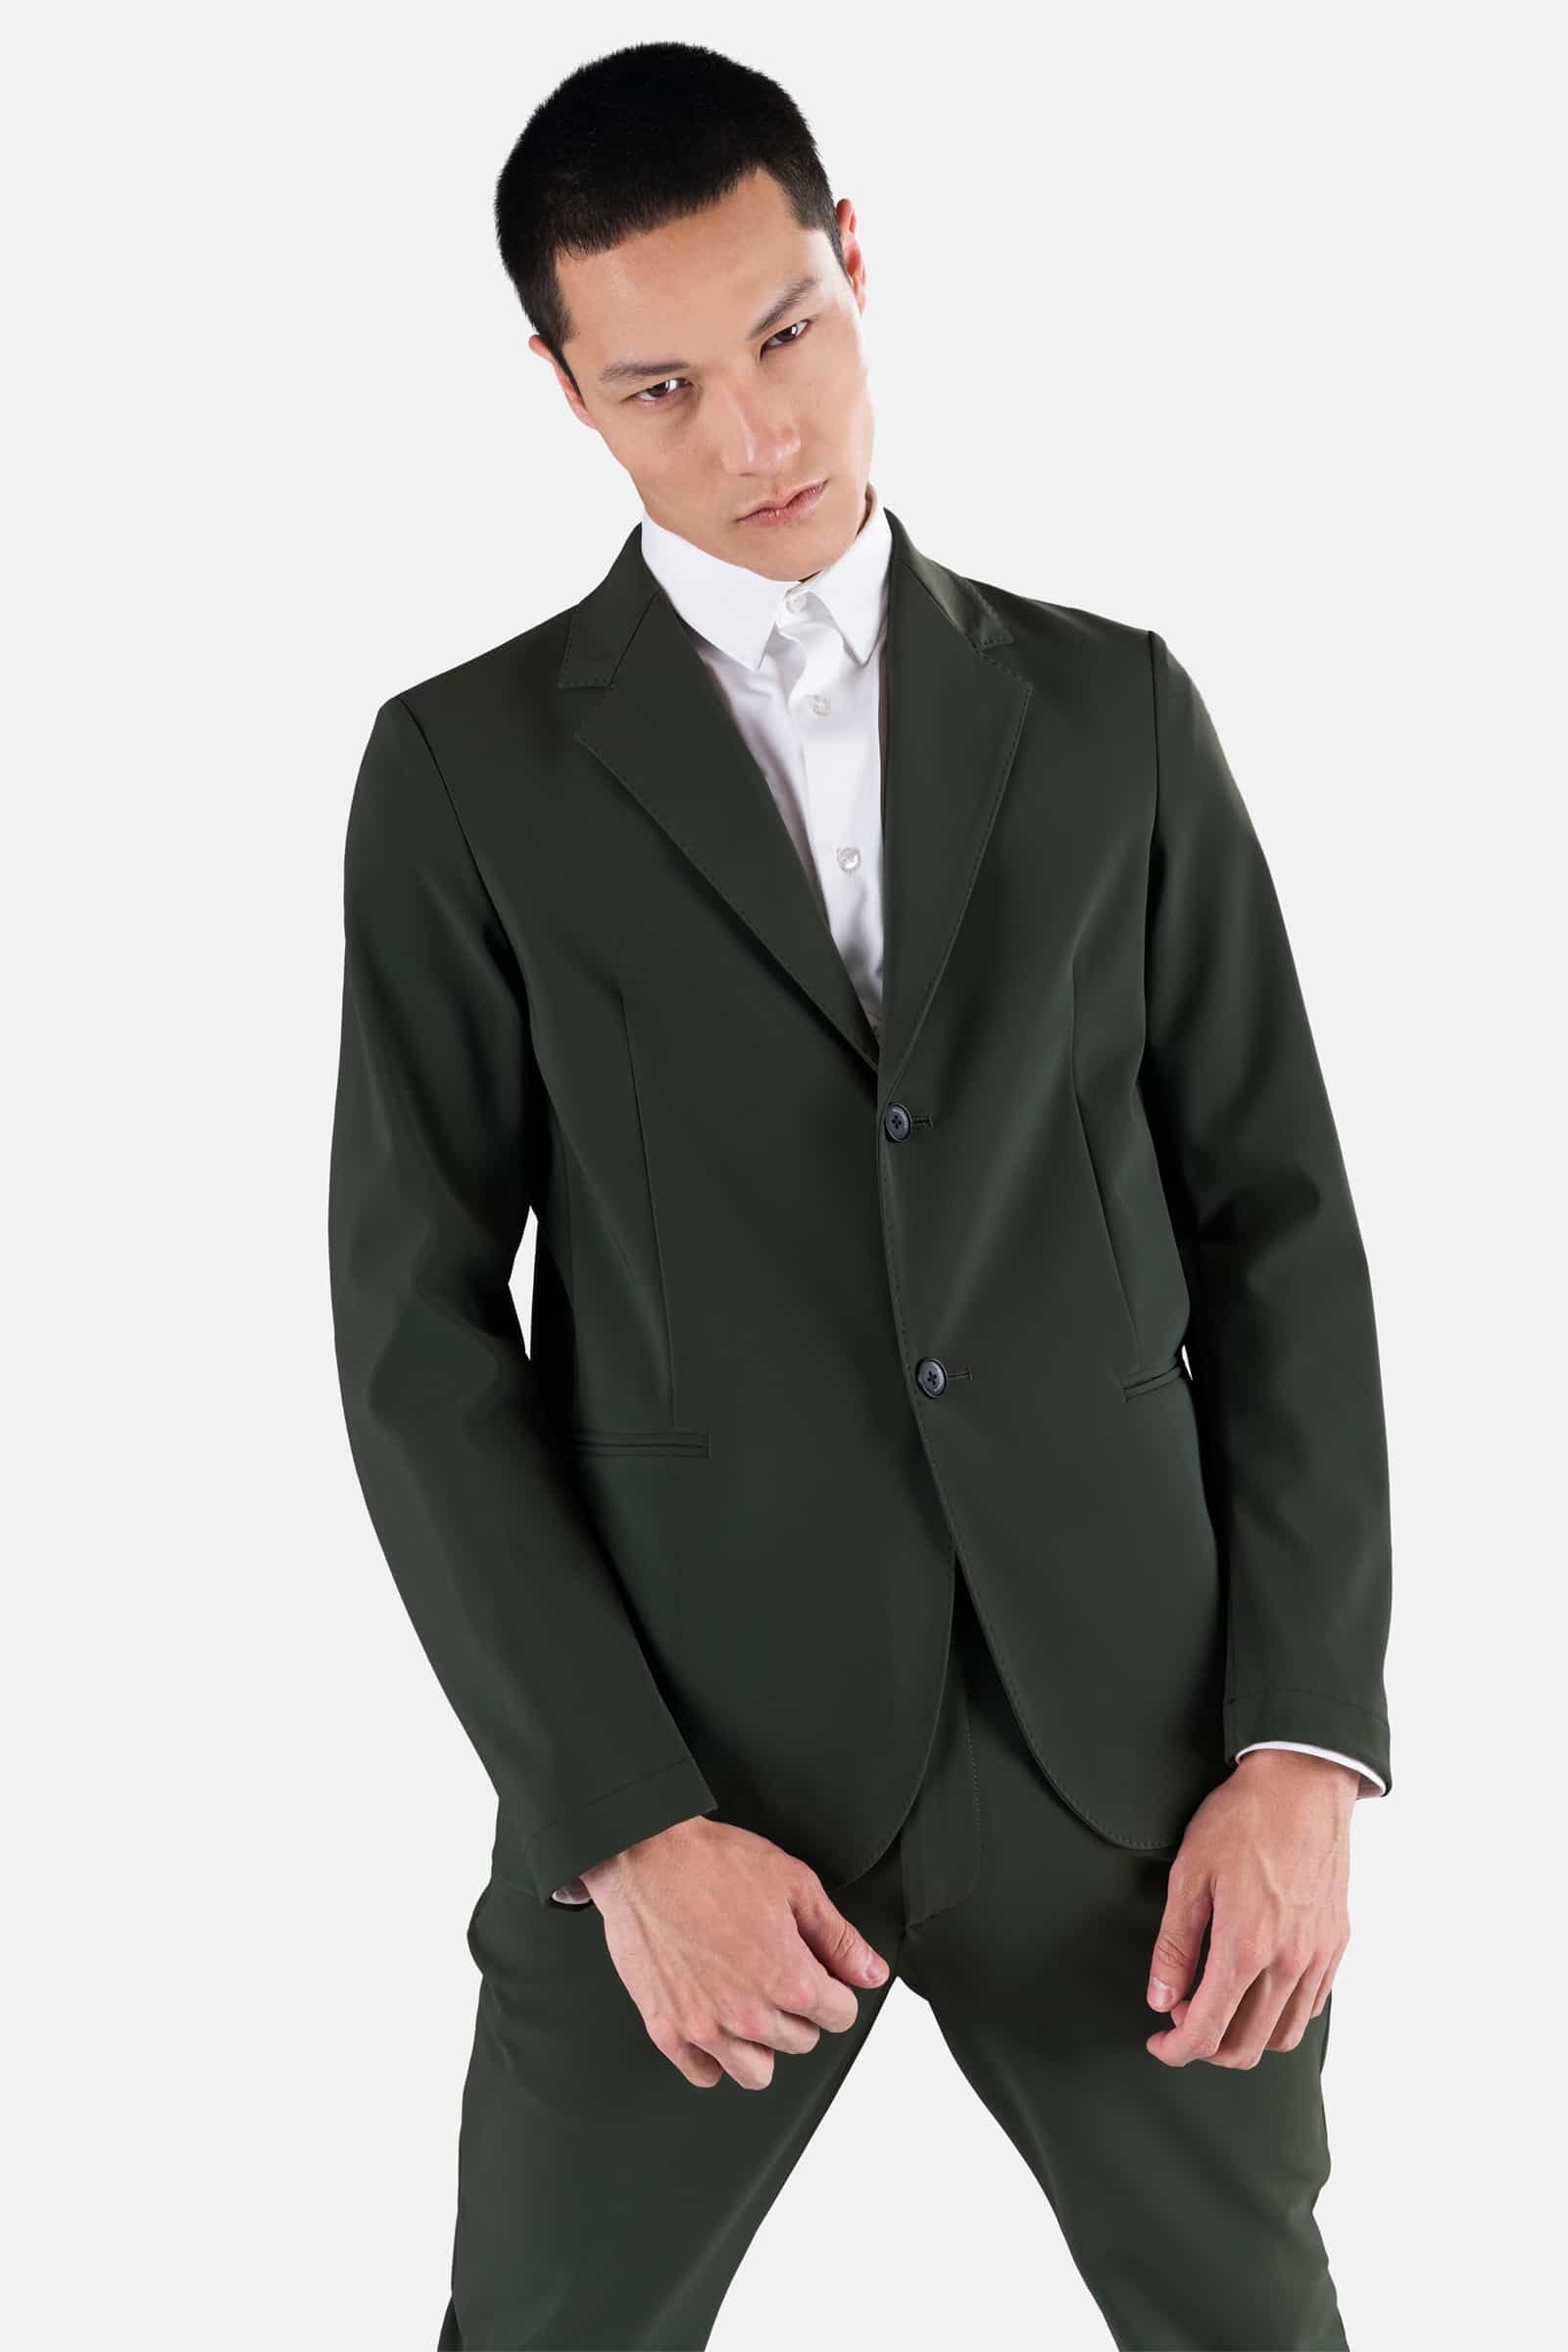 CLASSIC JACKET - MILITARY GREEN - Hydrogen - Luxury Sportwear